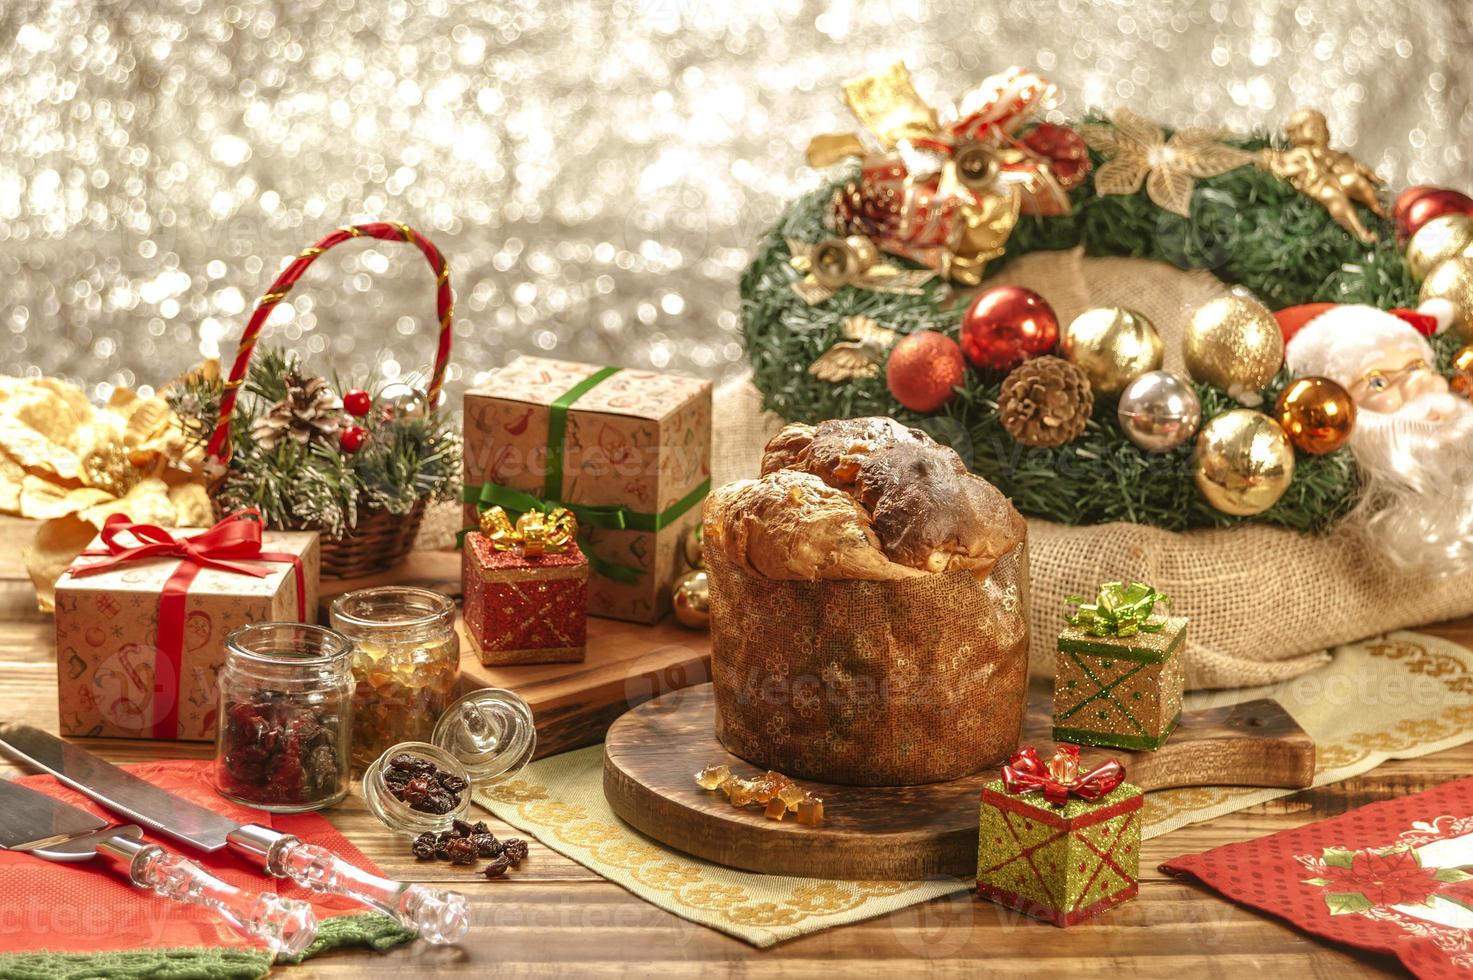 panetone, passas e cubos de frutas cristalizadas em uma tábua de madeira com enfeites de natal foto